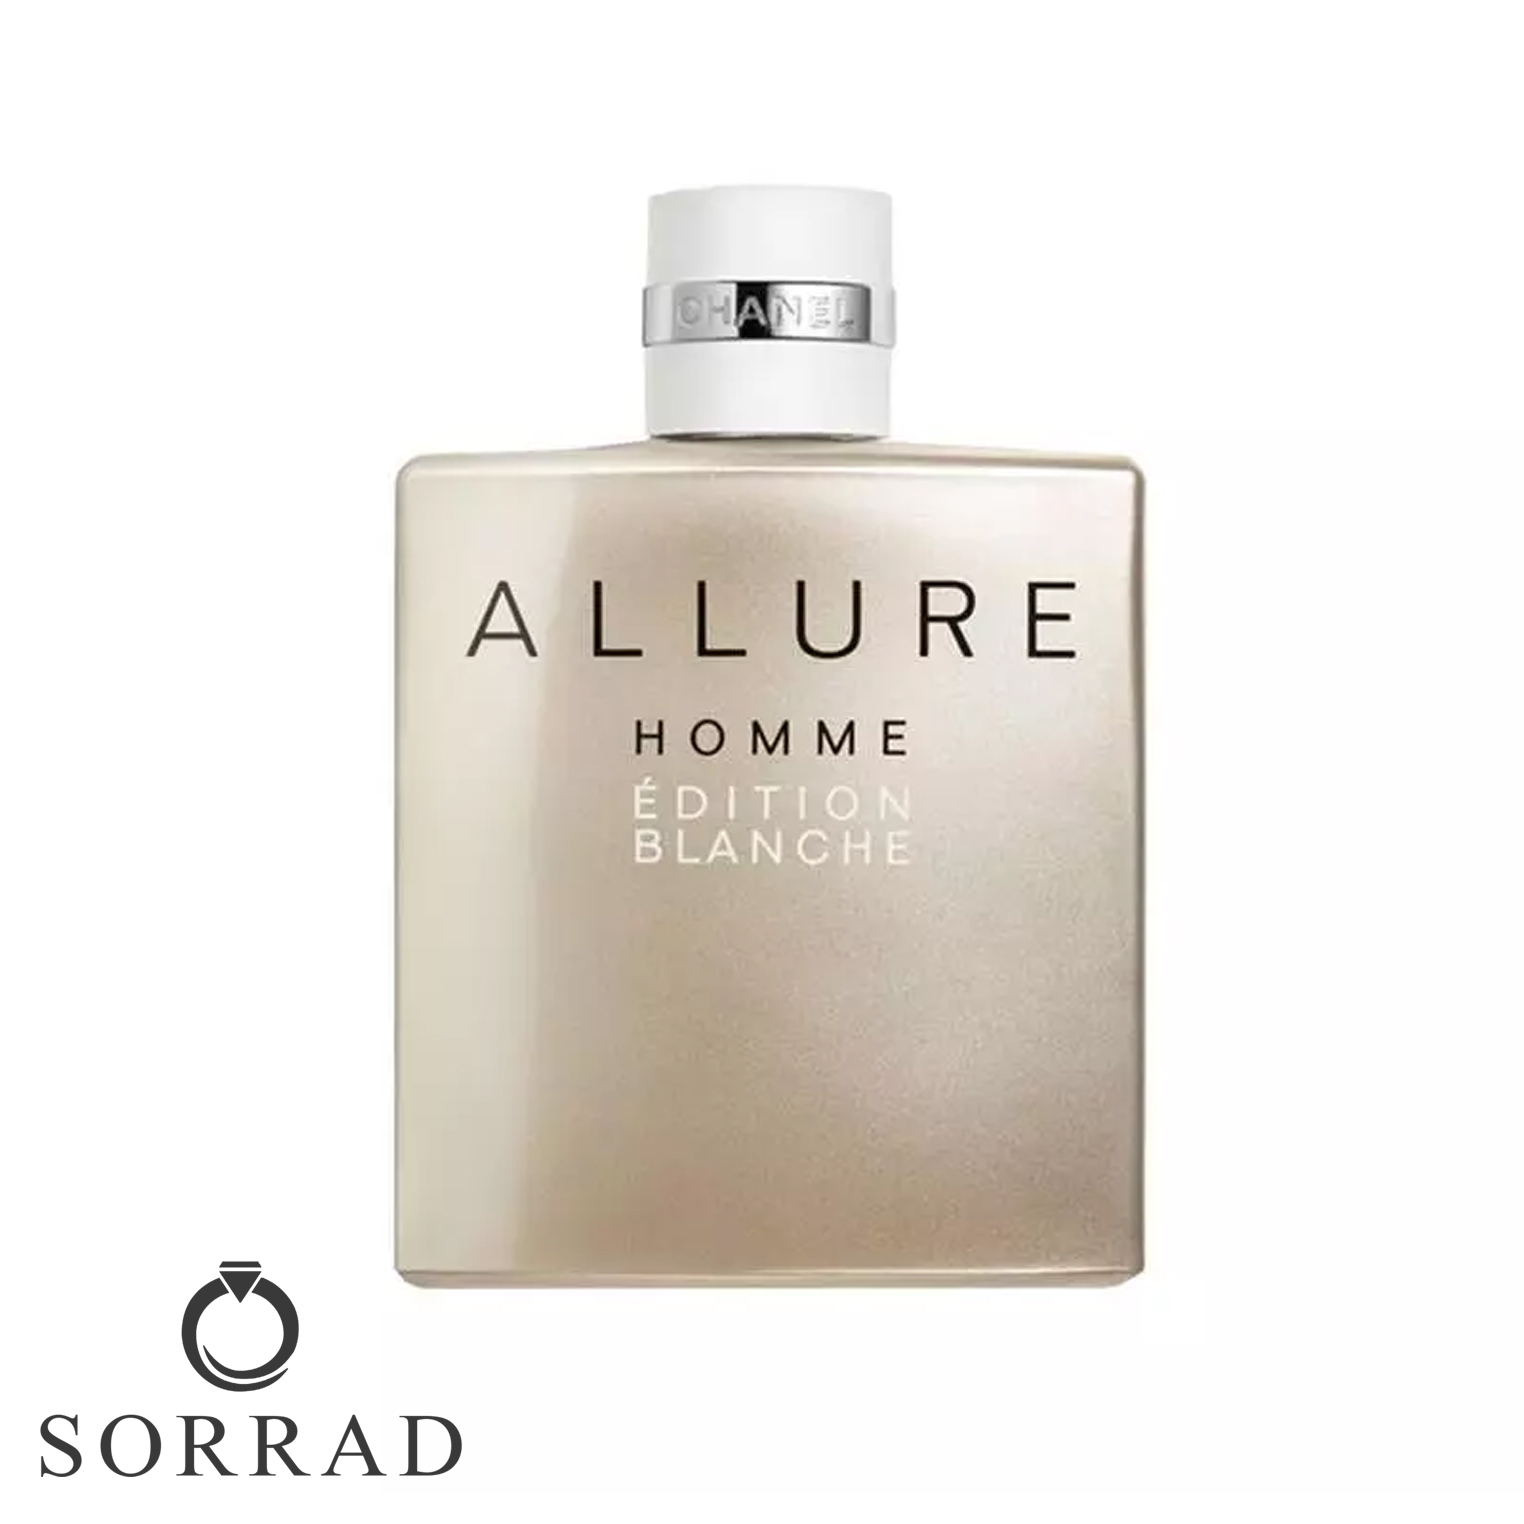 عطر ادکلن شنل الور هوم ادیشن بلانچ ادو پرفیوم | Chanel Allure Homme Edition Blanche